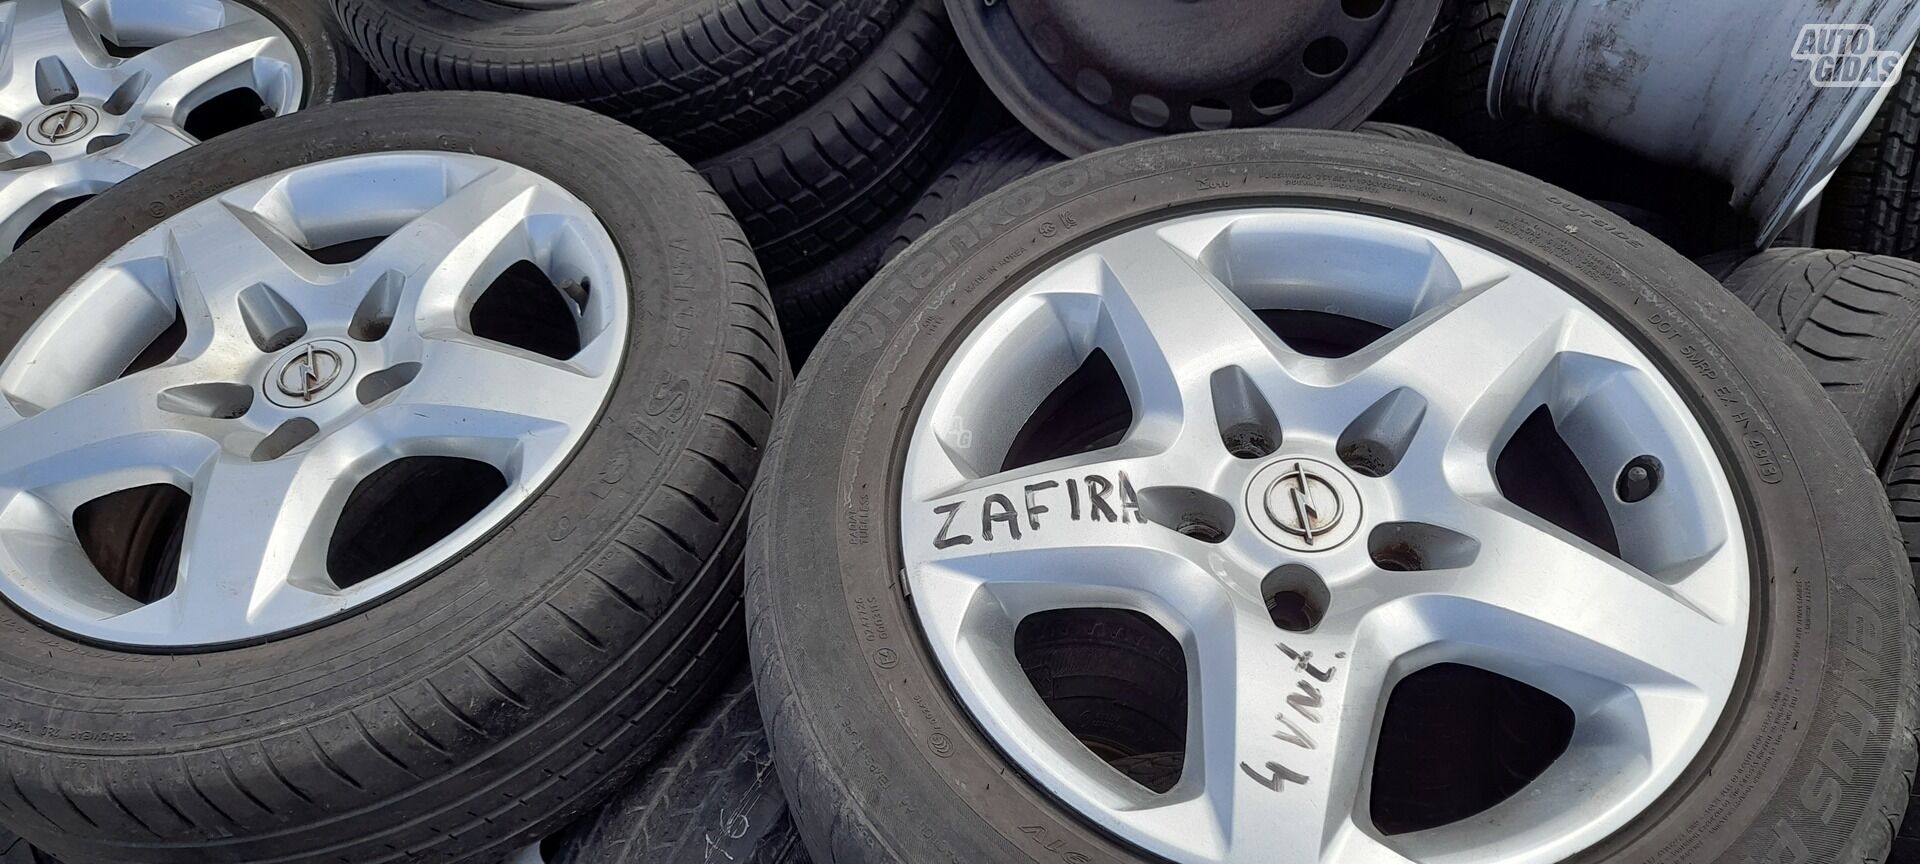 Opel Zafira R16 steel stamped rims